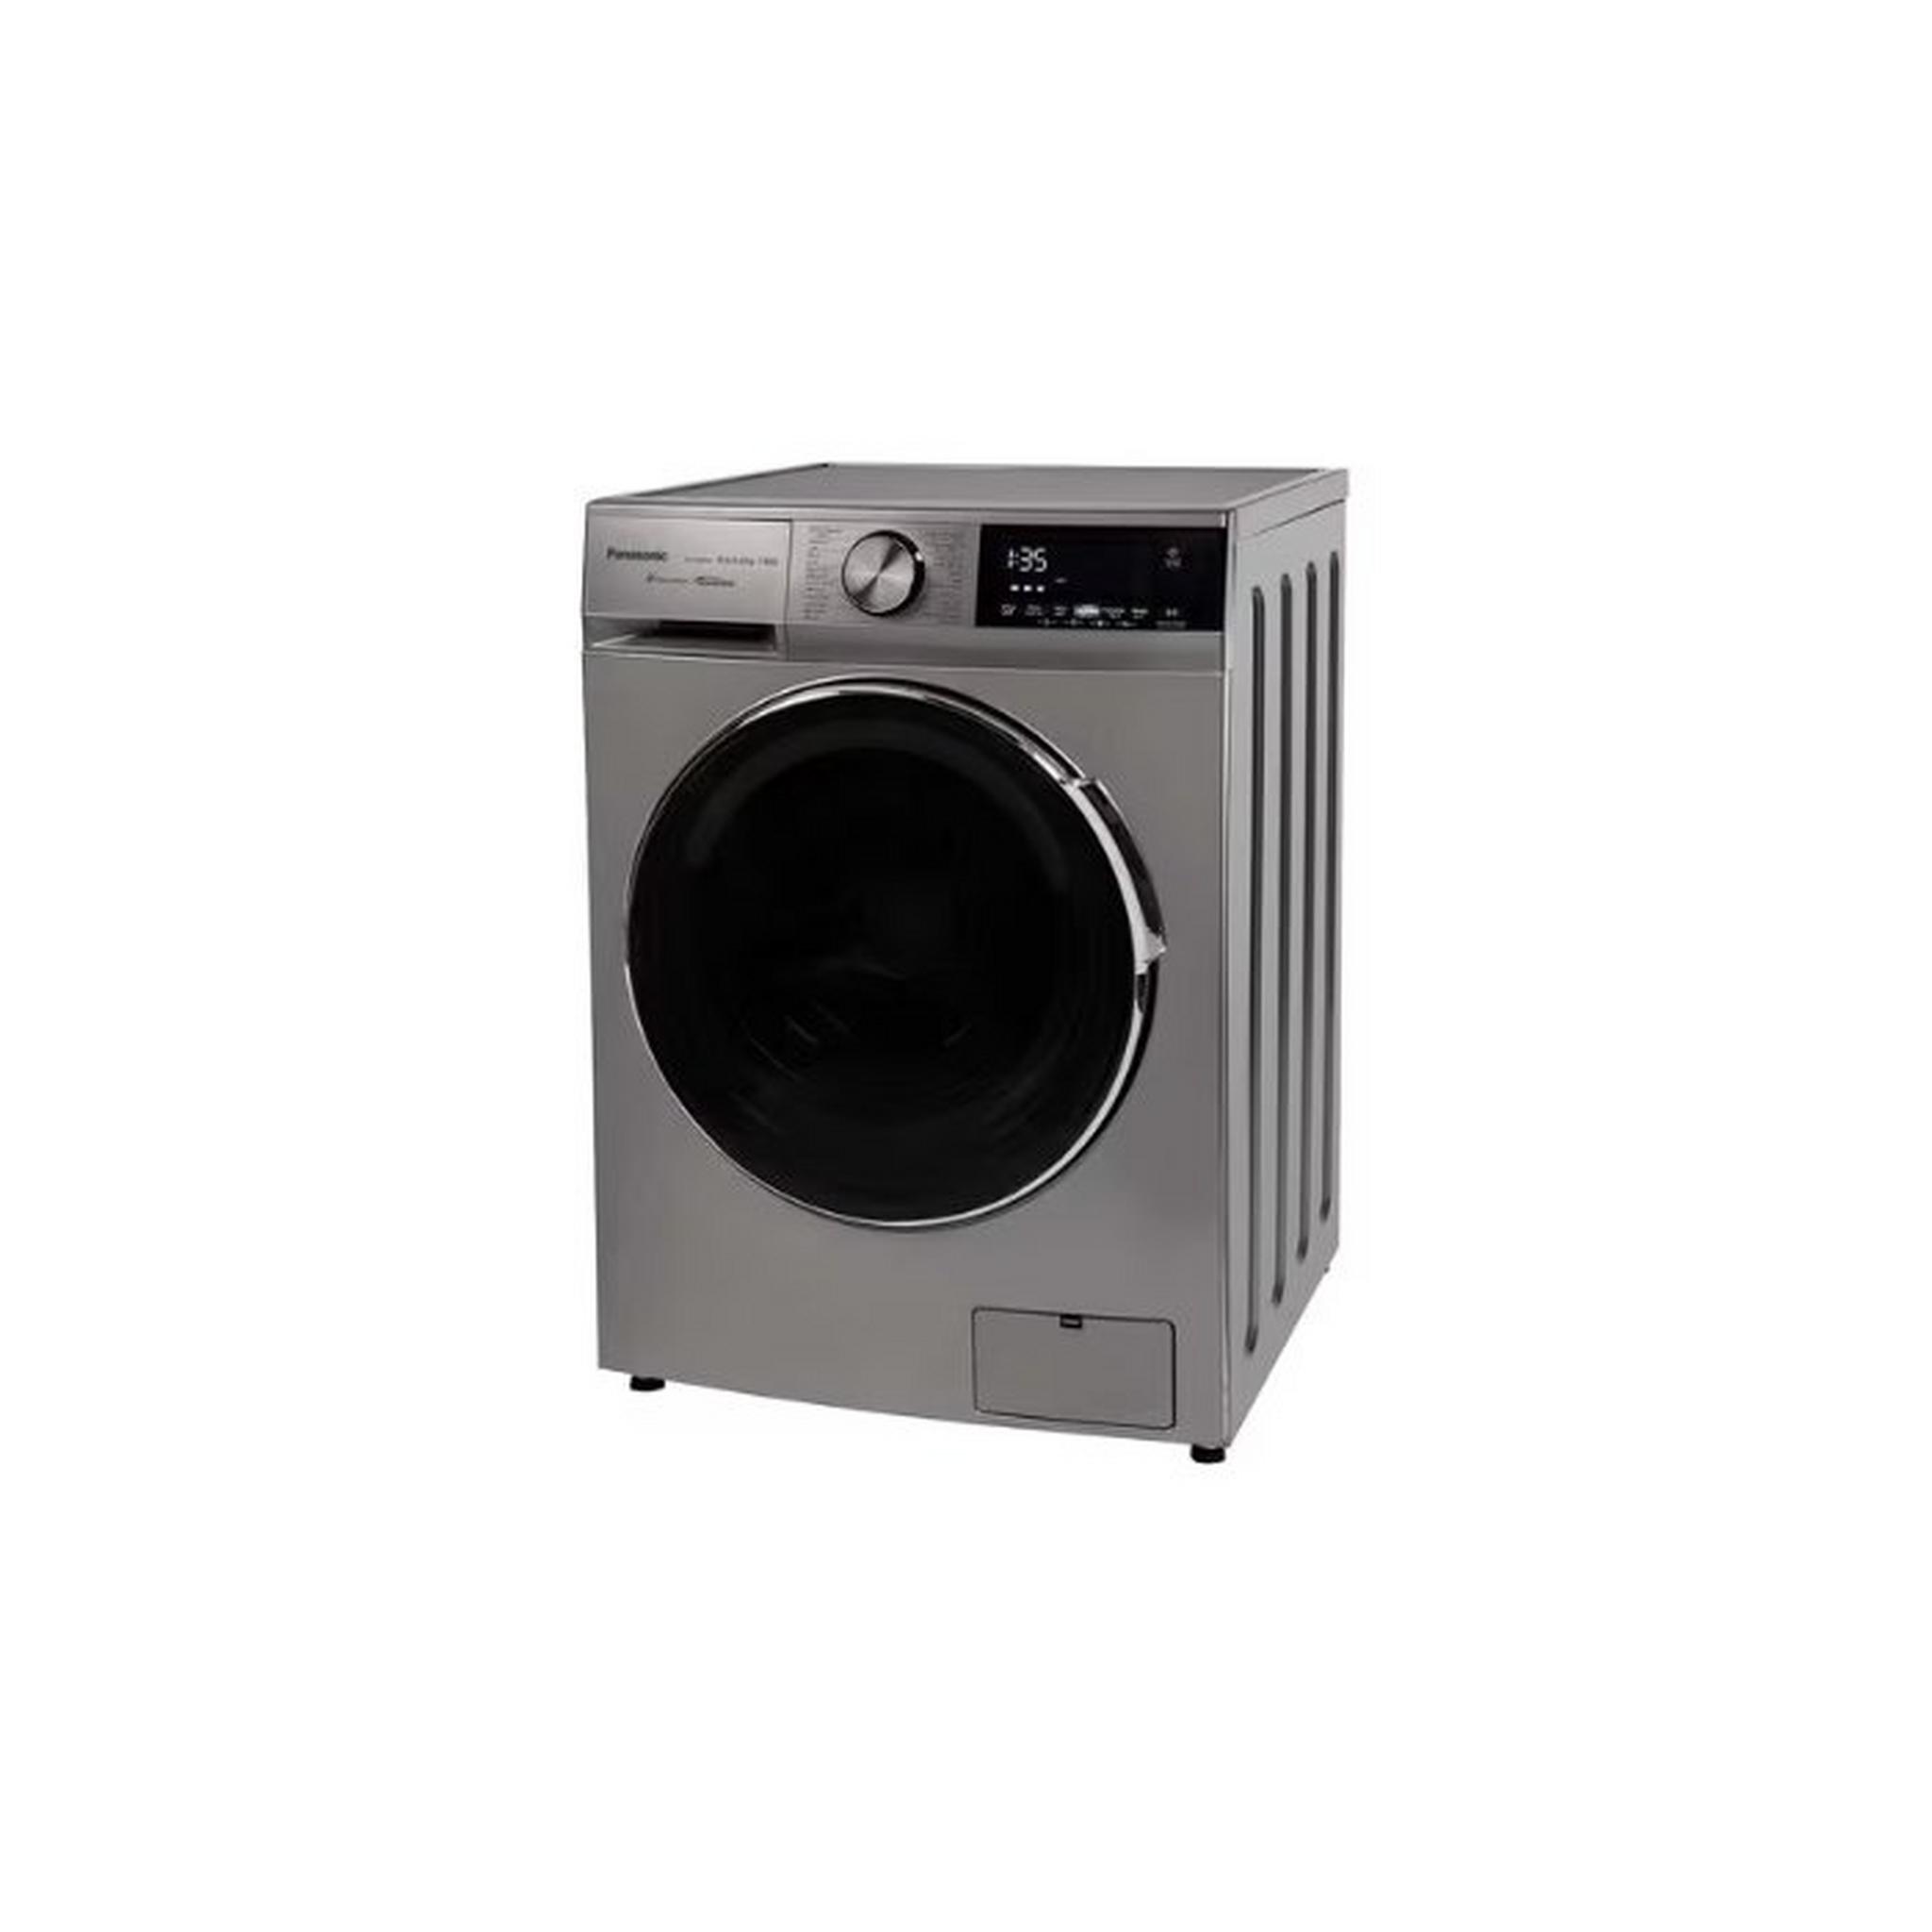 PANASONIC Front Load Washing, 12KG Washing Capacity, 8KG Drying Capacity, NA-S128M4LAS – Dark Silver